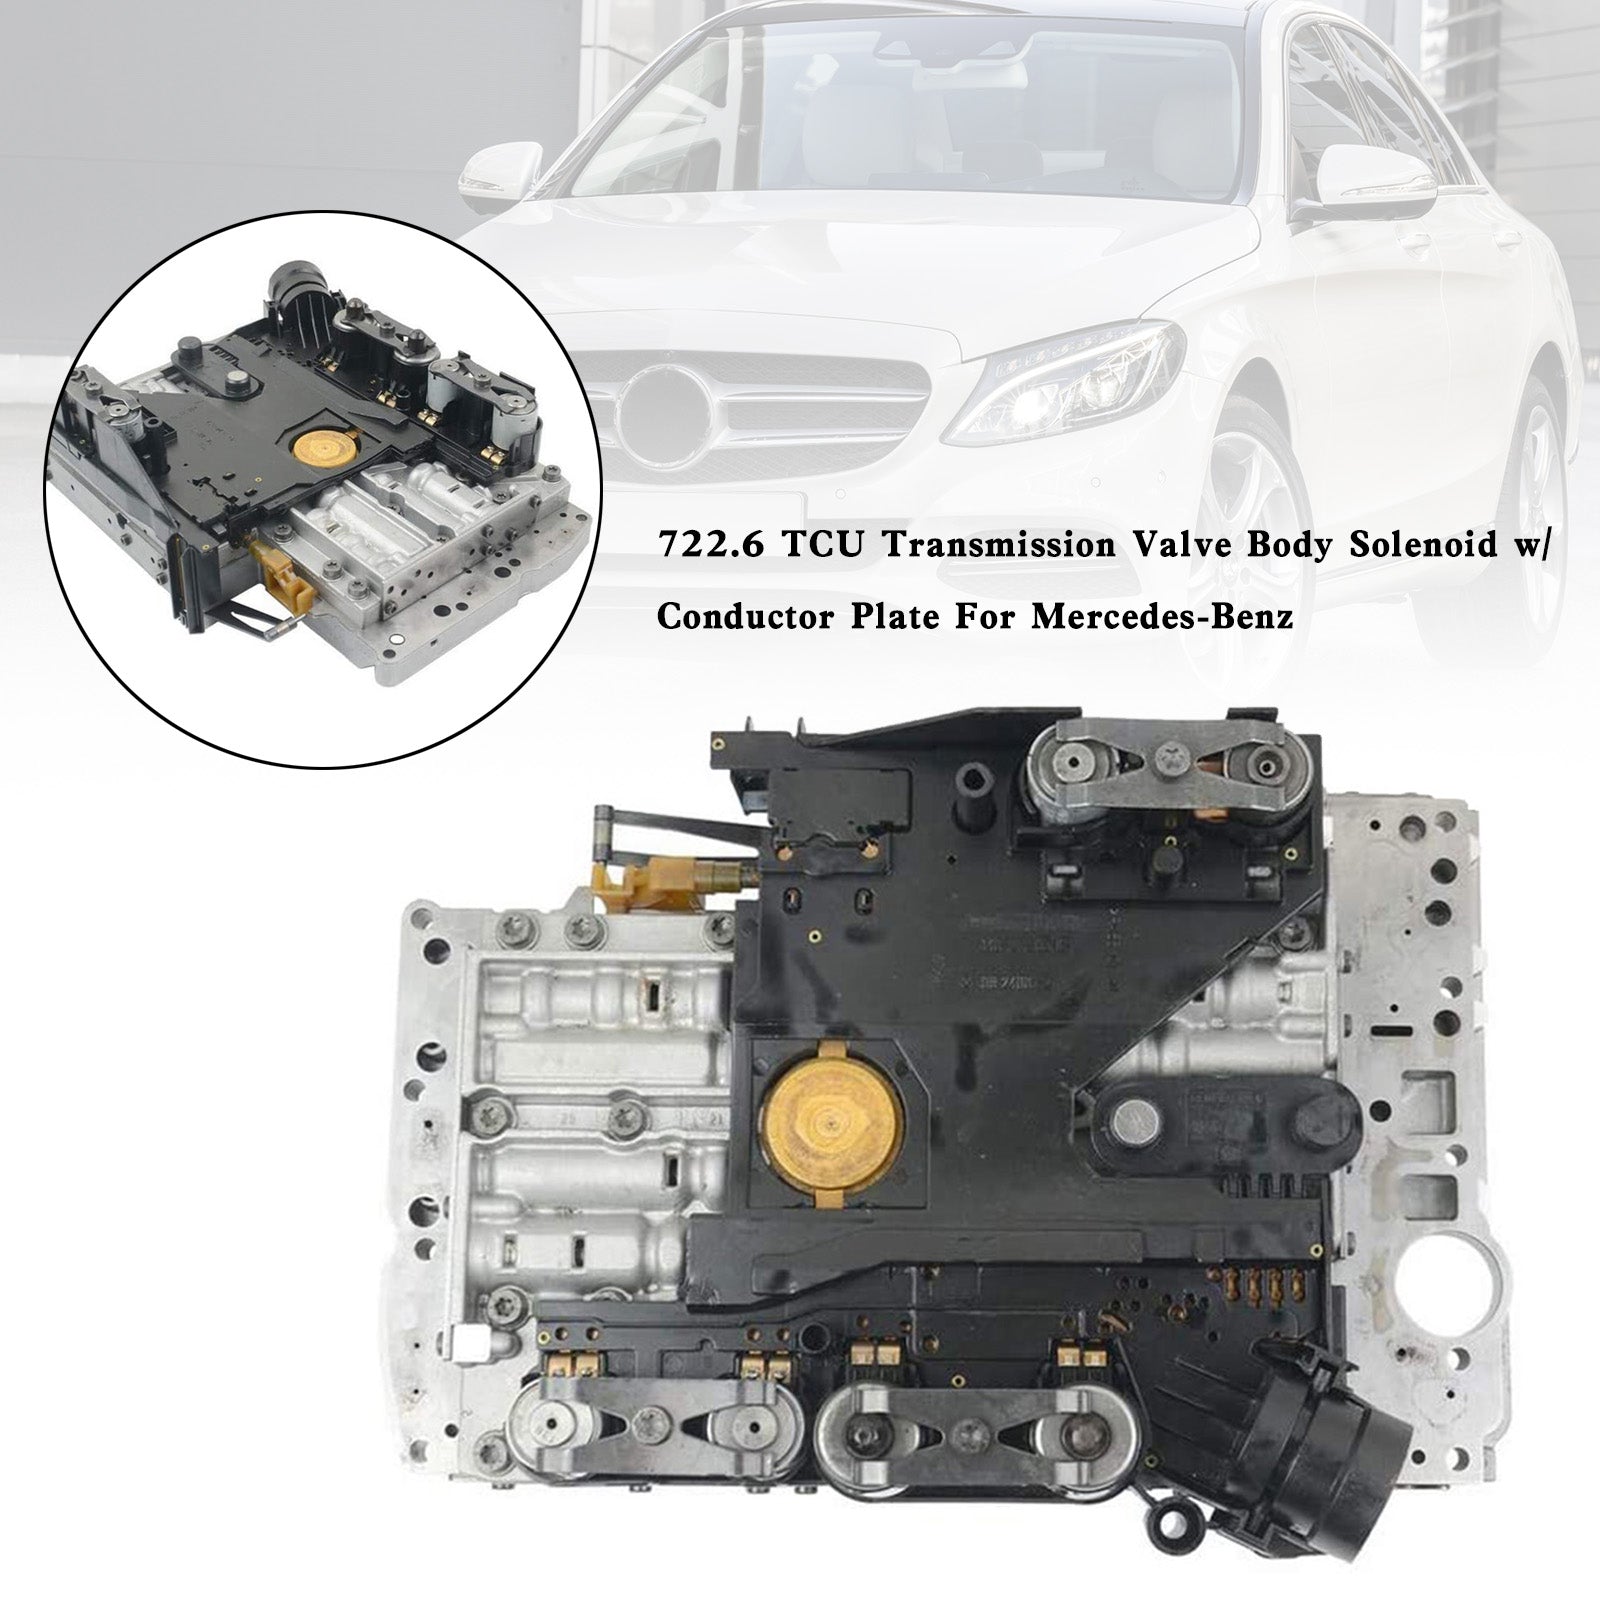 Solenoide del cuerpo de la válvula de transmisión TCU 722.6 A2402700106 con placa conductora para Mercedes-Benz